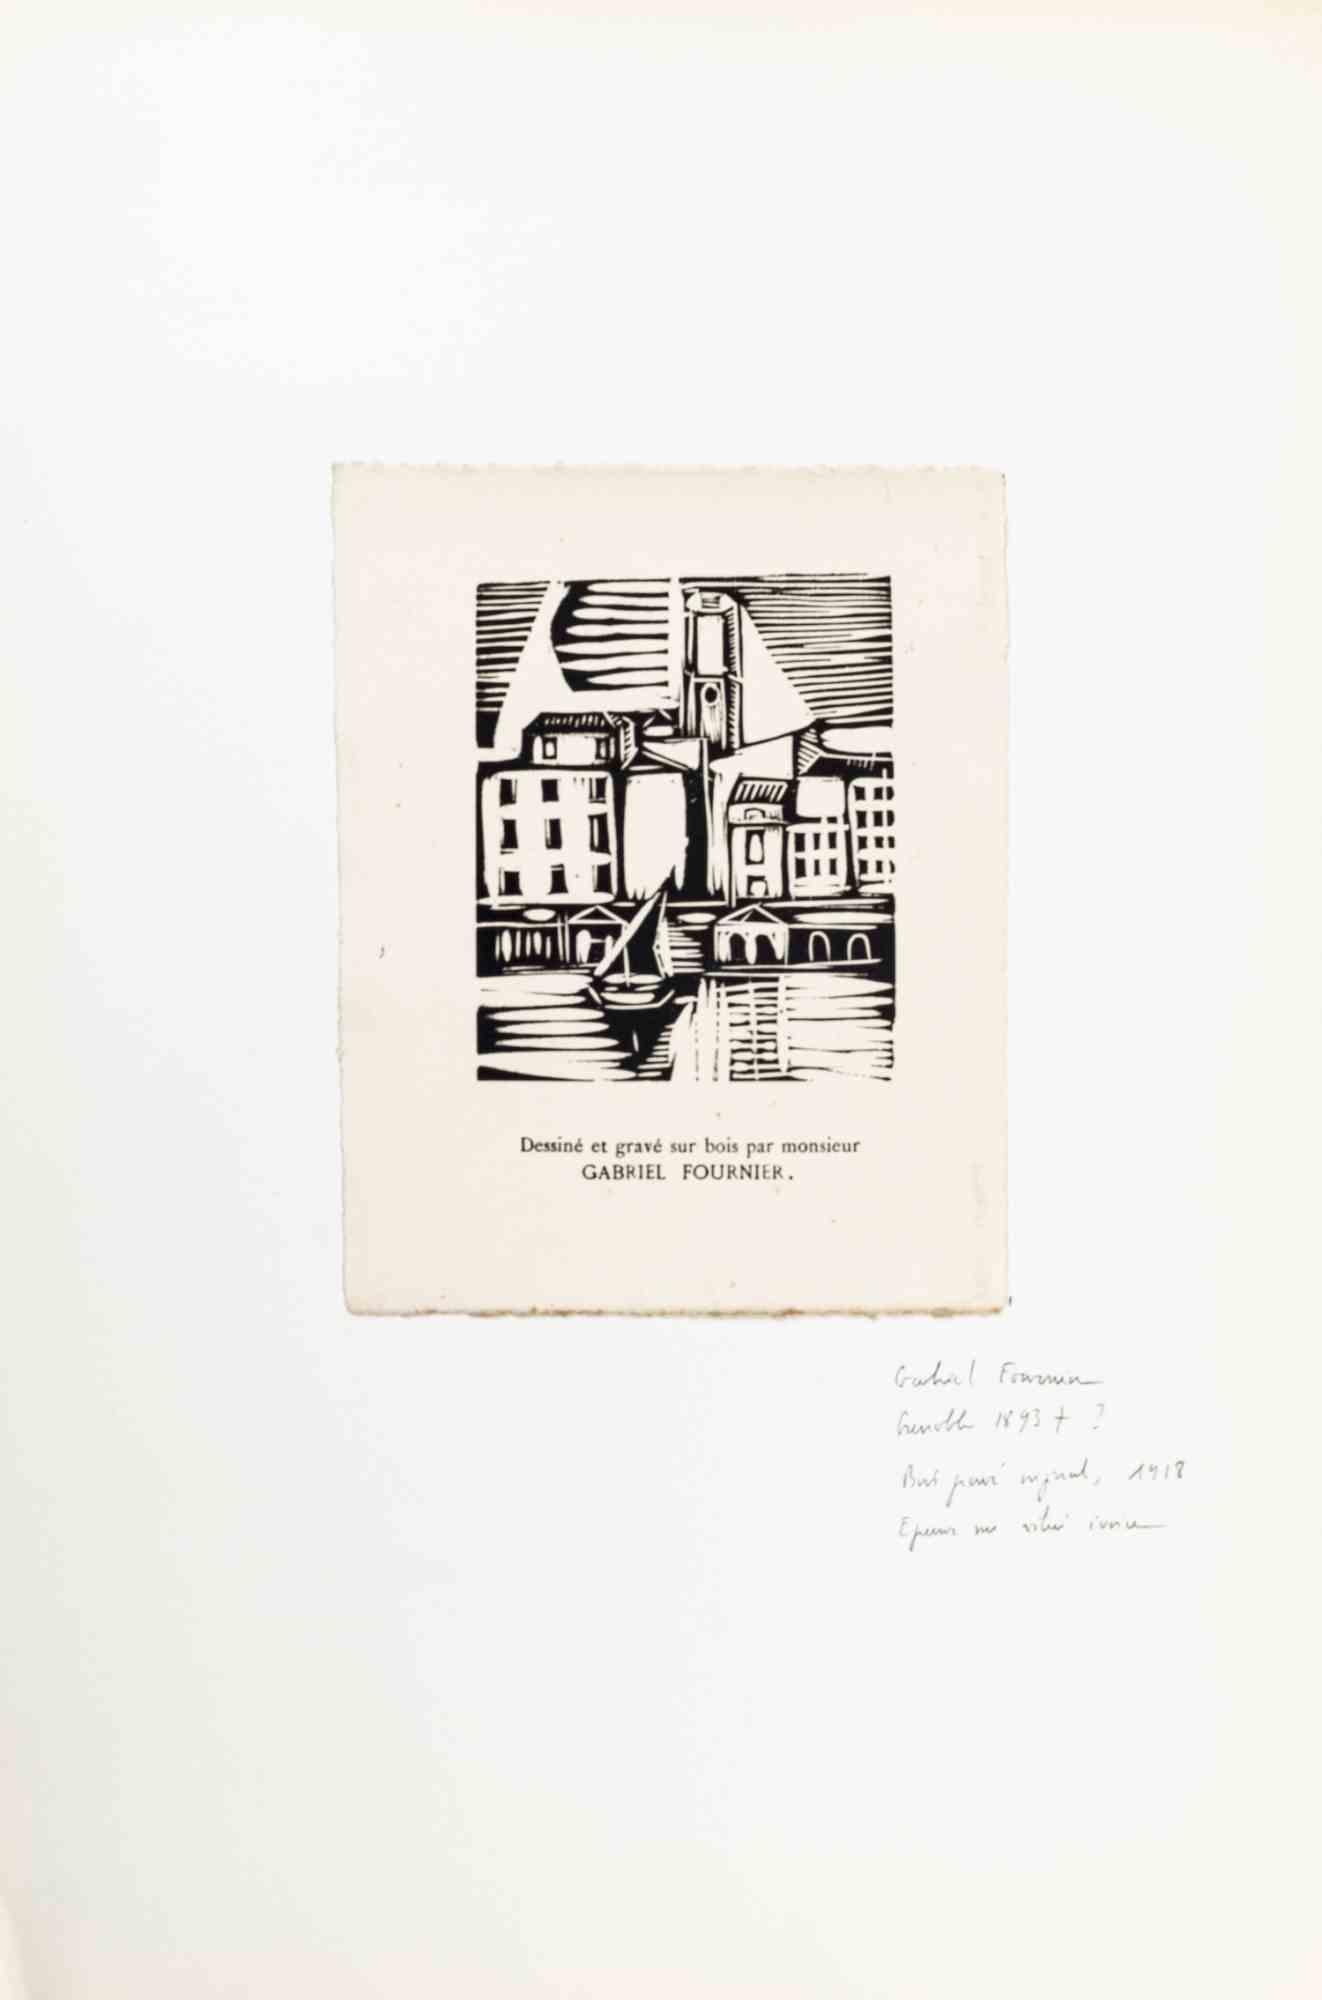 Le paysage urbain est une gravure sur bois réalisée par Gabriel Fournier au début du 20e siècle. 

Gravure sur bois sur papier.

Signé sur la plaque, appliqué sur un Passepartout:49 x 32 cm

L'œuvre d'art est réalisée par des traits forts et habiles